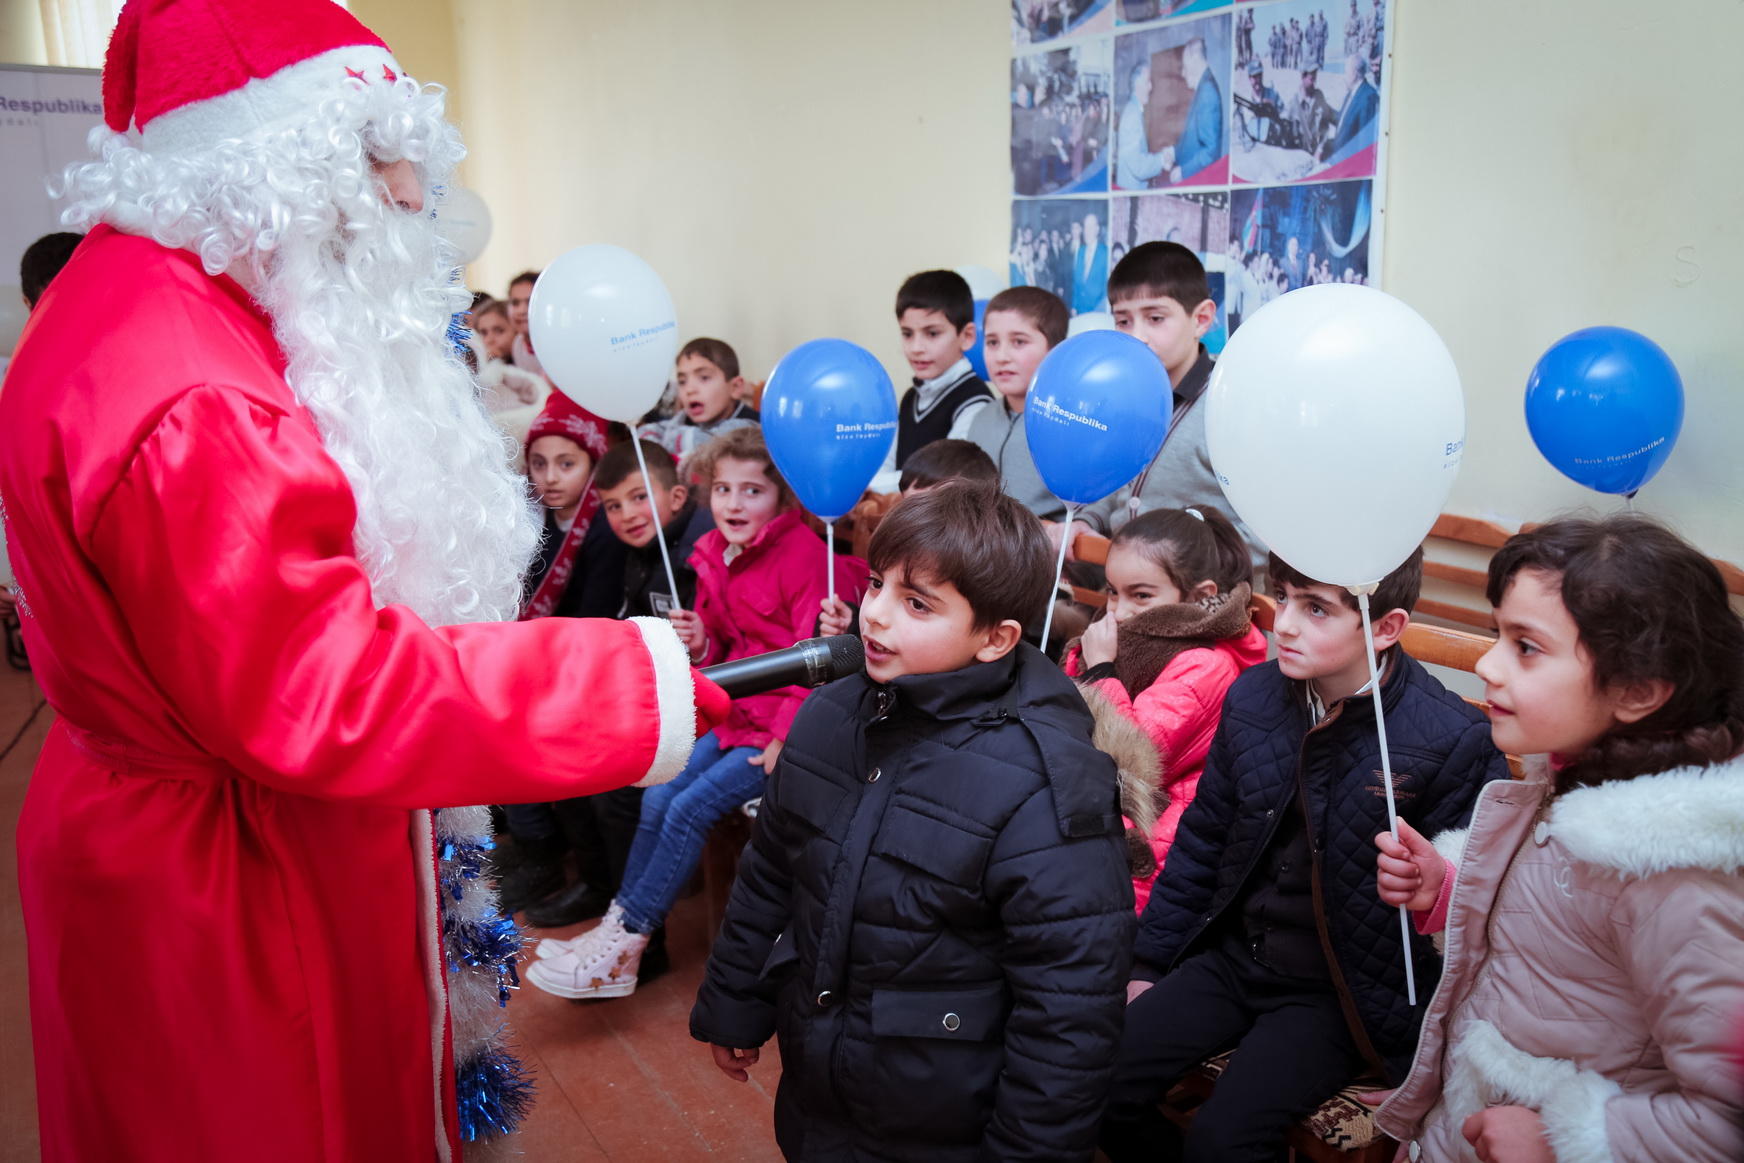 Bank Respublika выполнил новогодние пожелания детей школы-интерната (ФОТО)